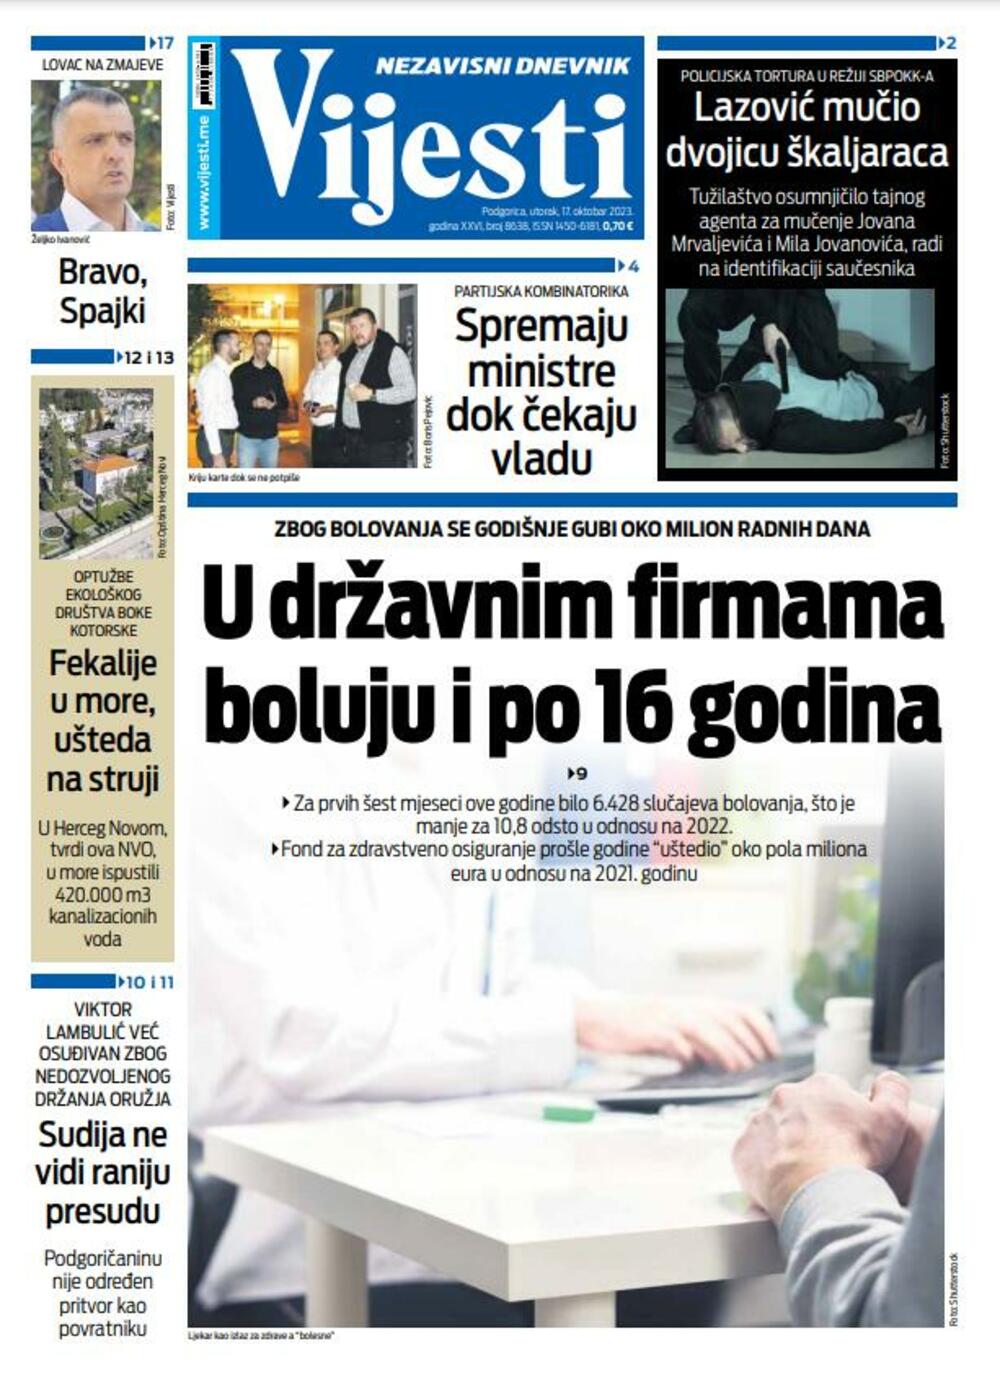 Naslovna strana "Vijesti" za 17. oktobar 2023., Foto: Vijesti